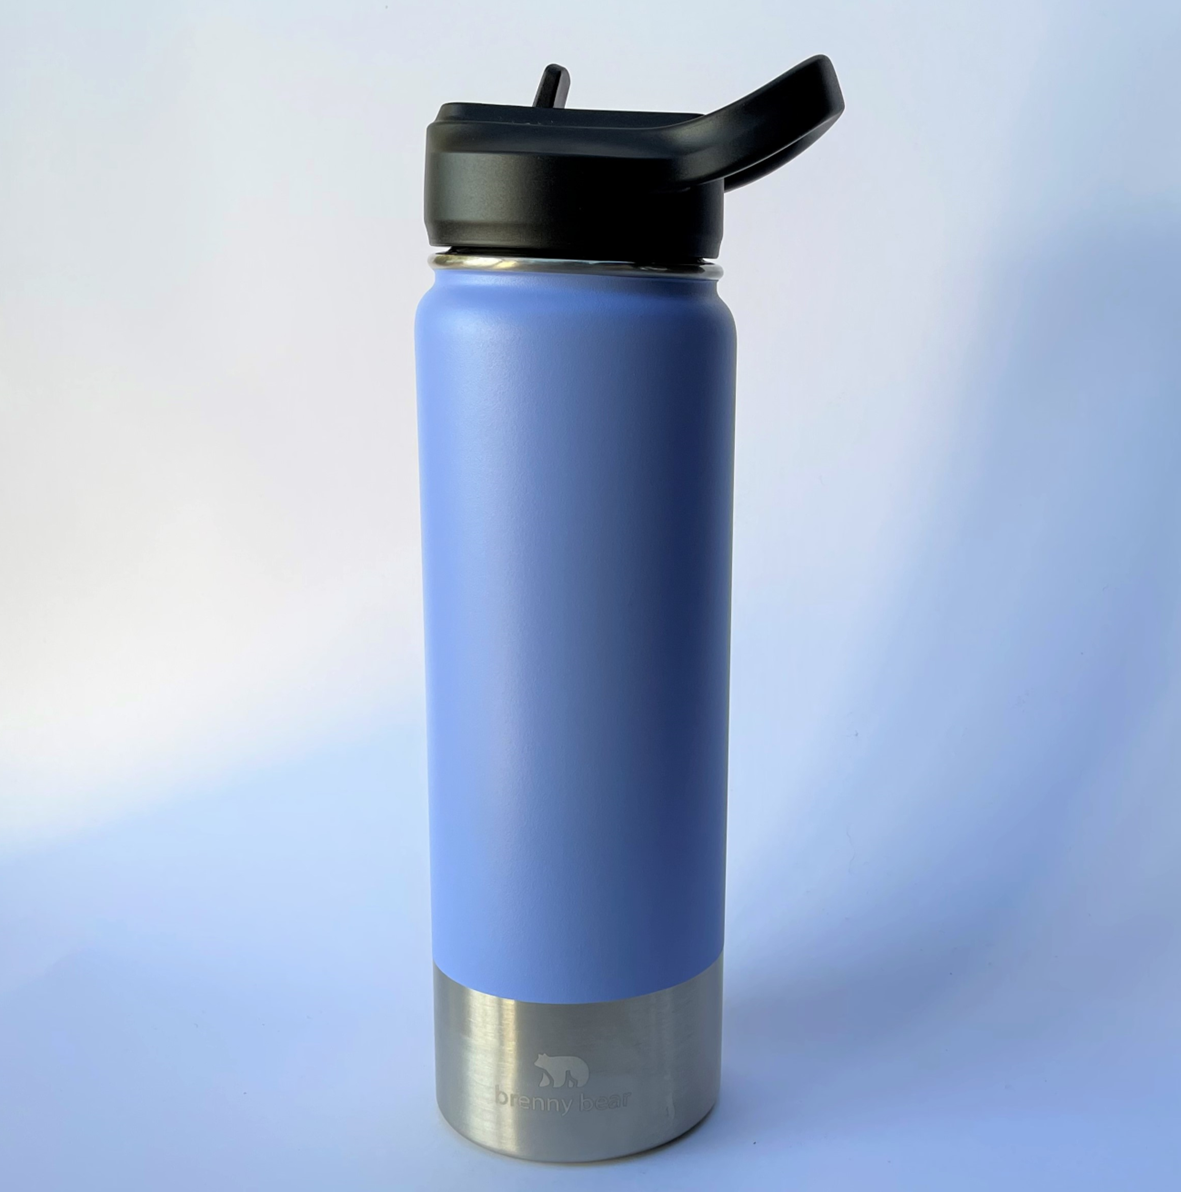 https://brennybear.com/cdn/shop/products/sml_sky_blue_water_bottle_flip_lid.png?v=1690189448&width=1445